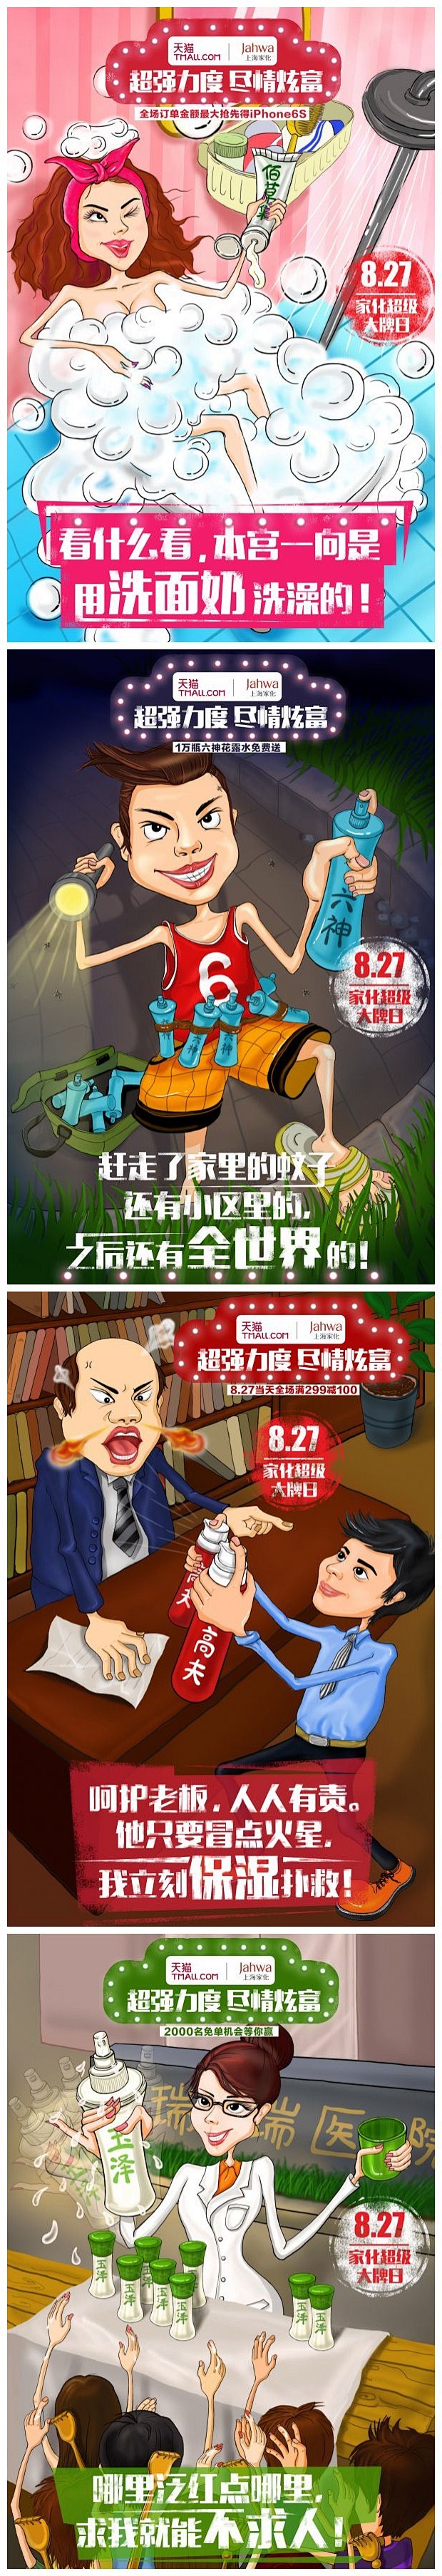 上海家化-“傲娇炫富”系列的病毒海报 #...